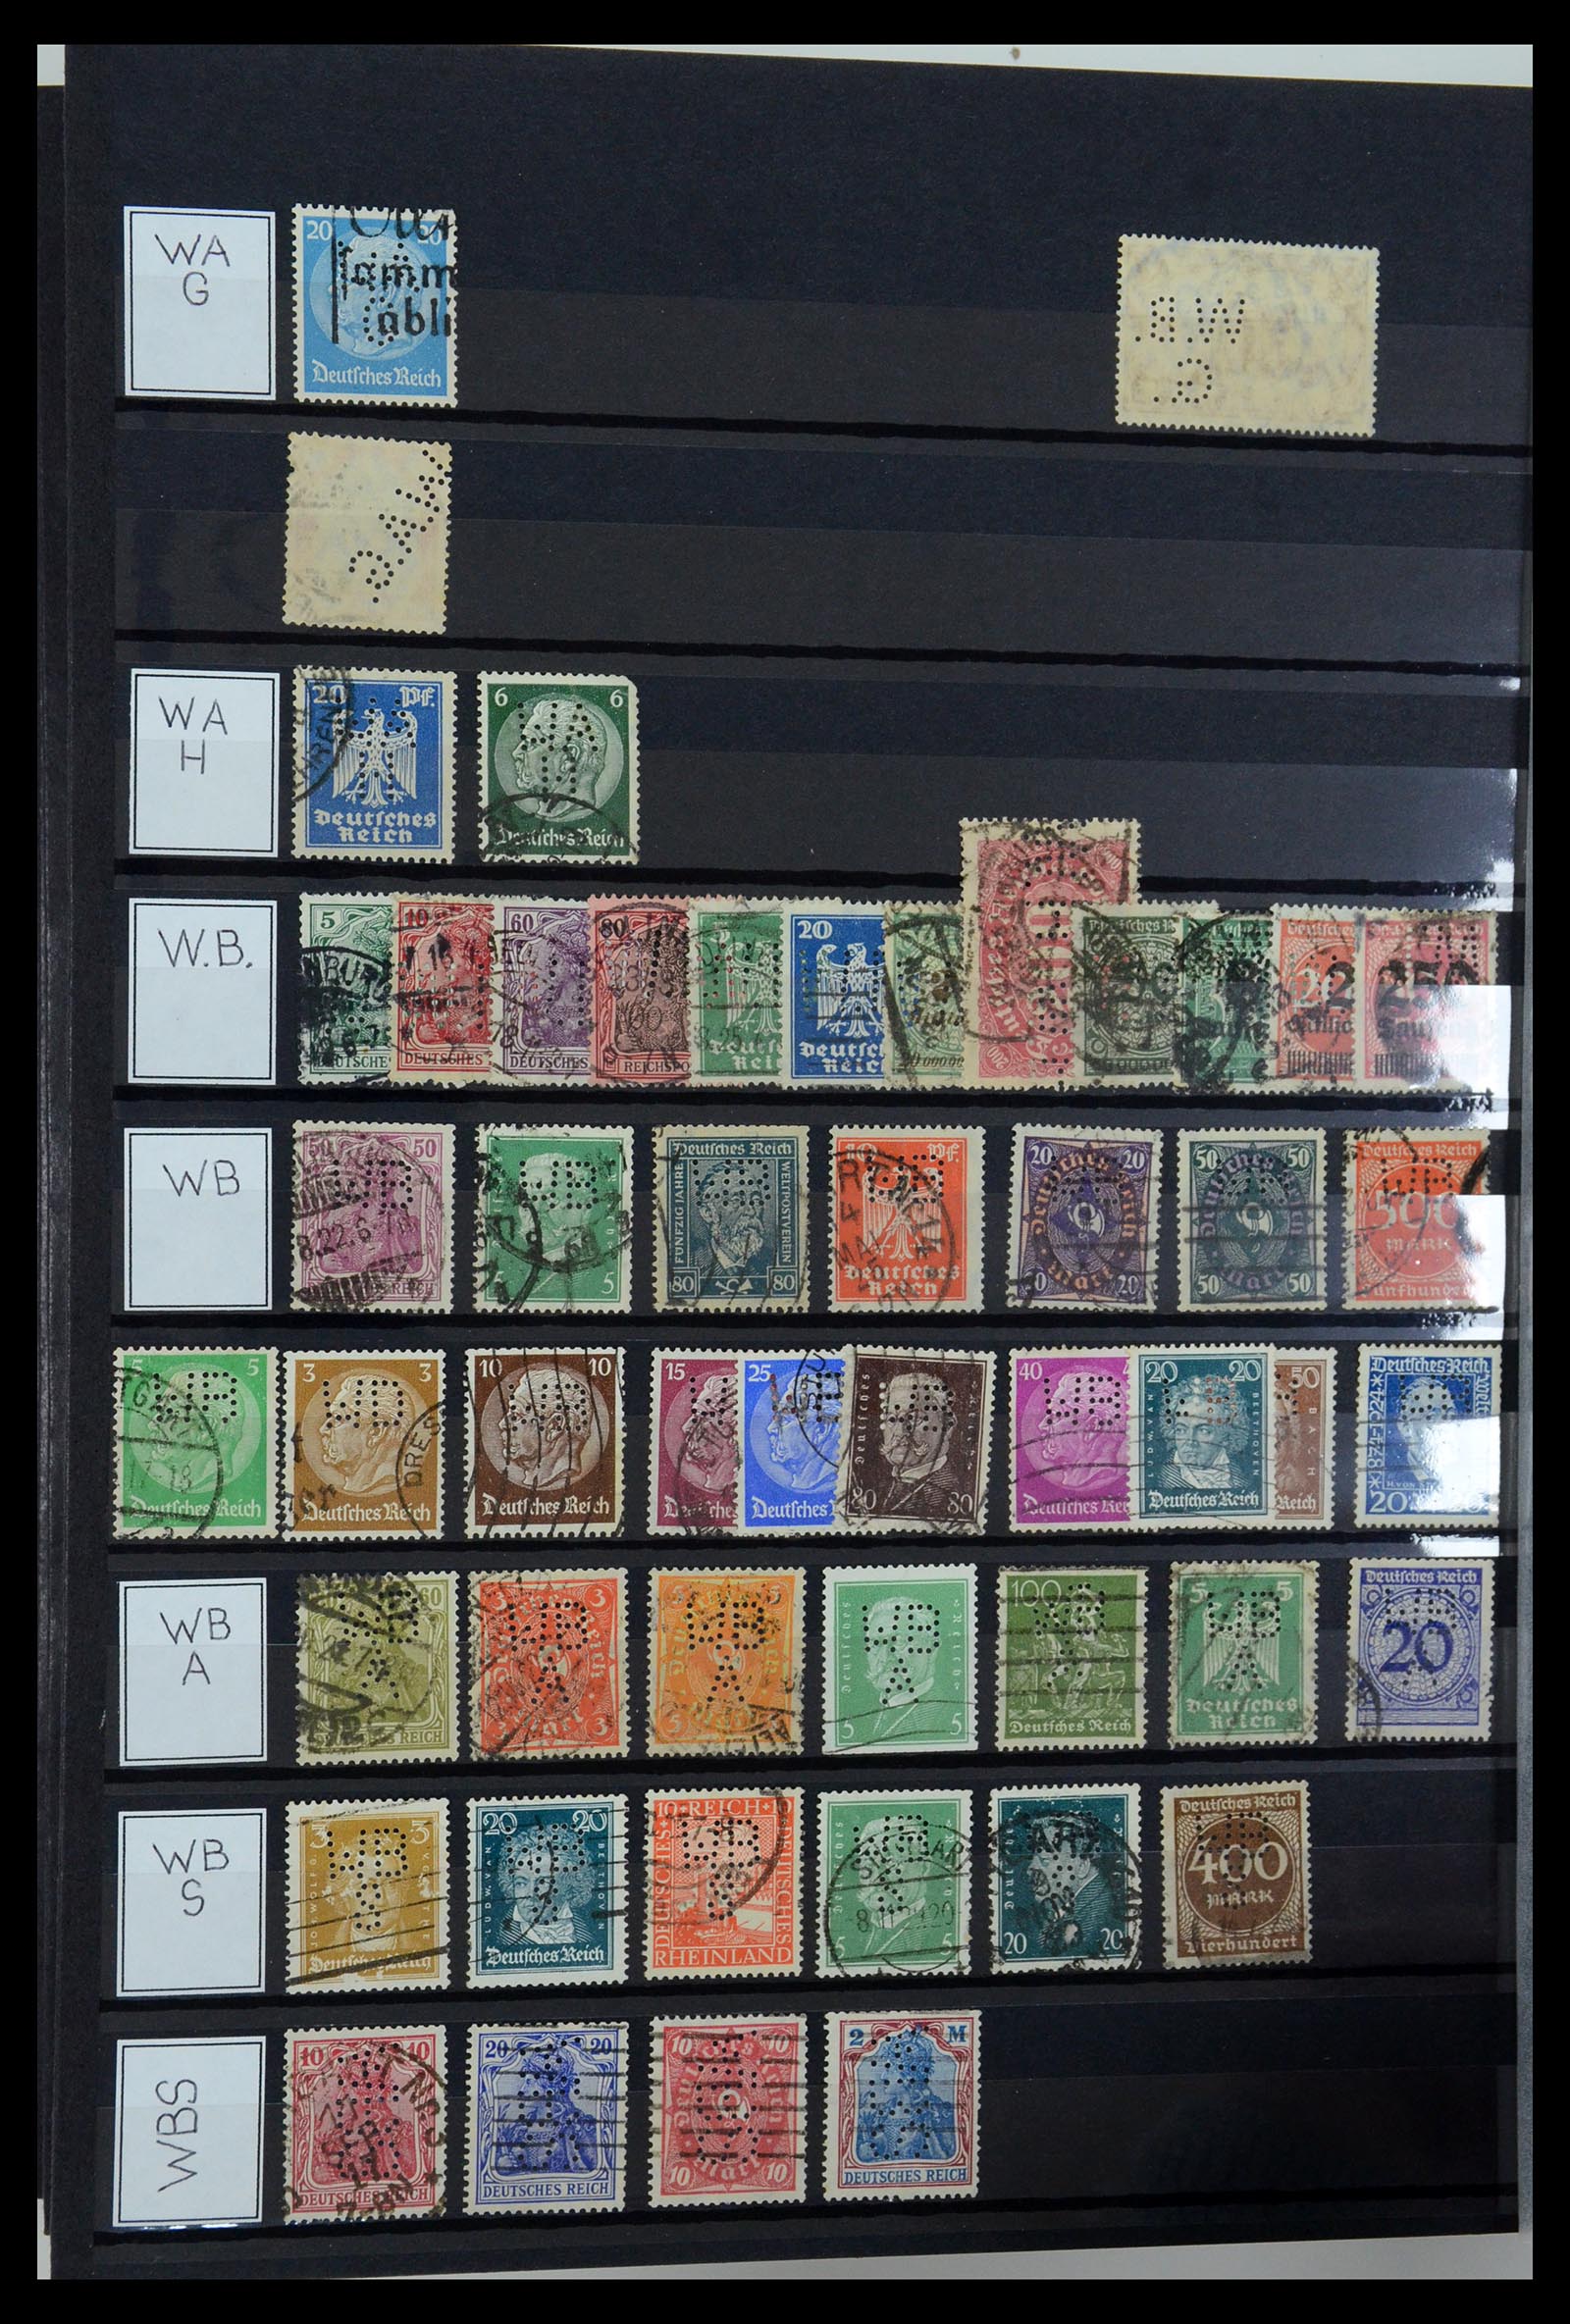 36405 335 - Stamp collection 36405 German Reich perfins 1880-1945.